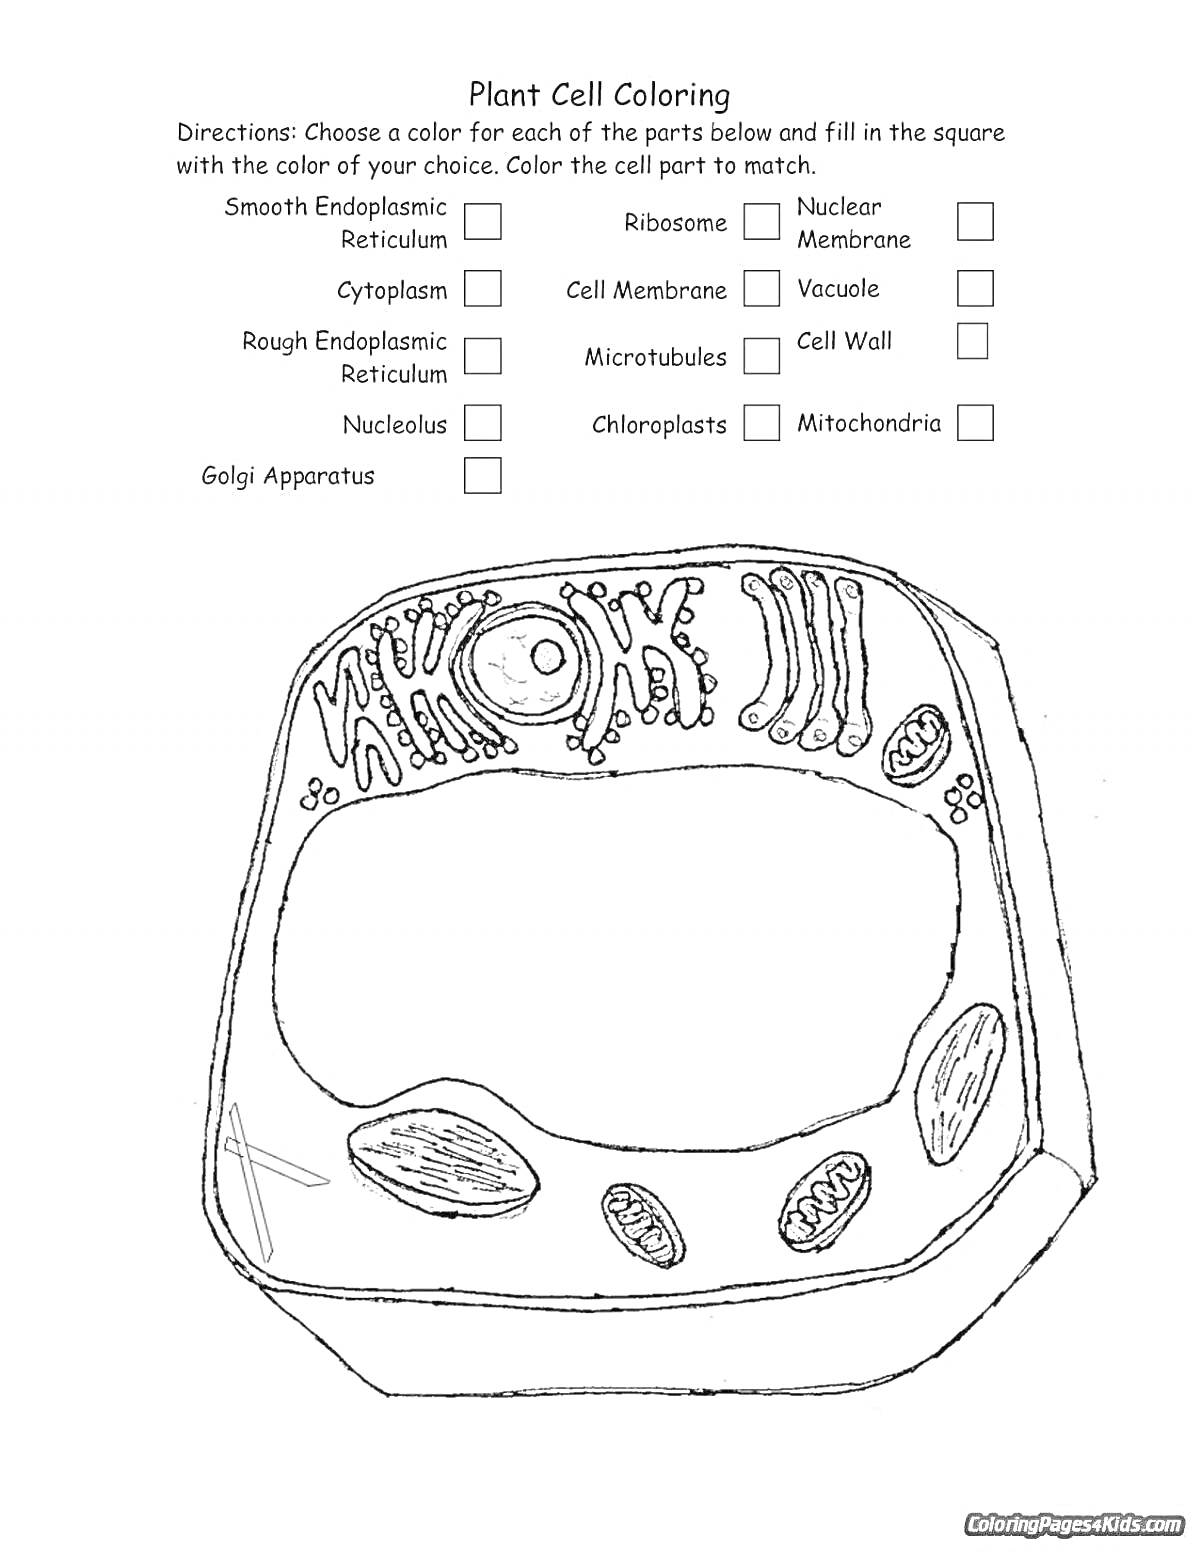 Раскраска Растительная клетка с обозначениями элементов (гладкая ЭПС, рибосомы, ядро, цитоплазма, клеточная мембрана, вакуоль, шероховатая ЭПС, микротрубочки, клеточная стенка, аппарат Гольджи, хлоропласты, митохондрии)